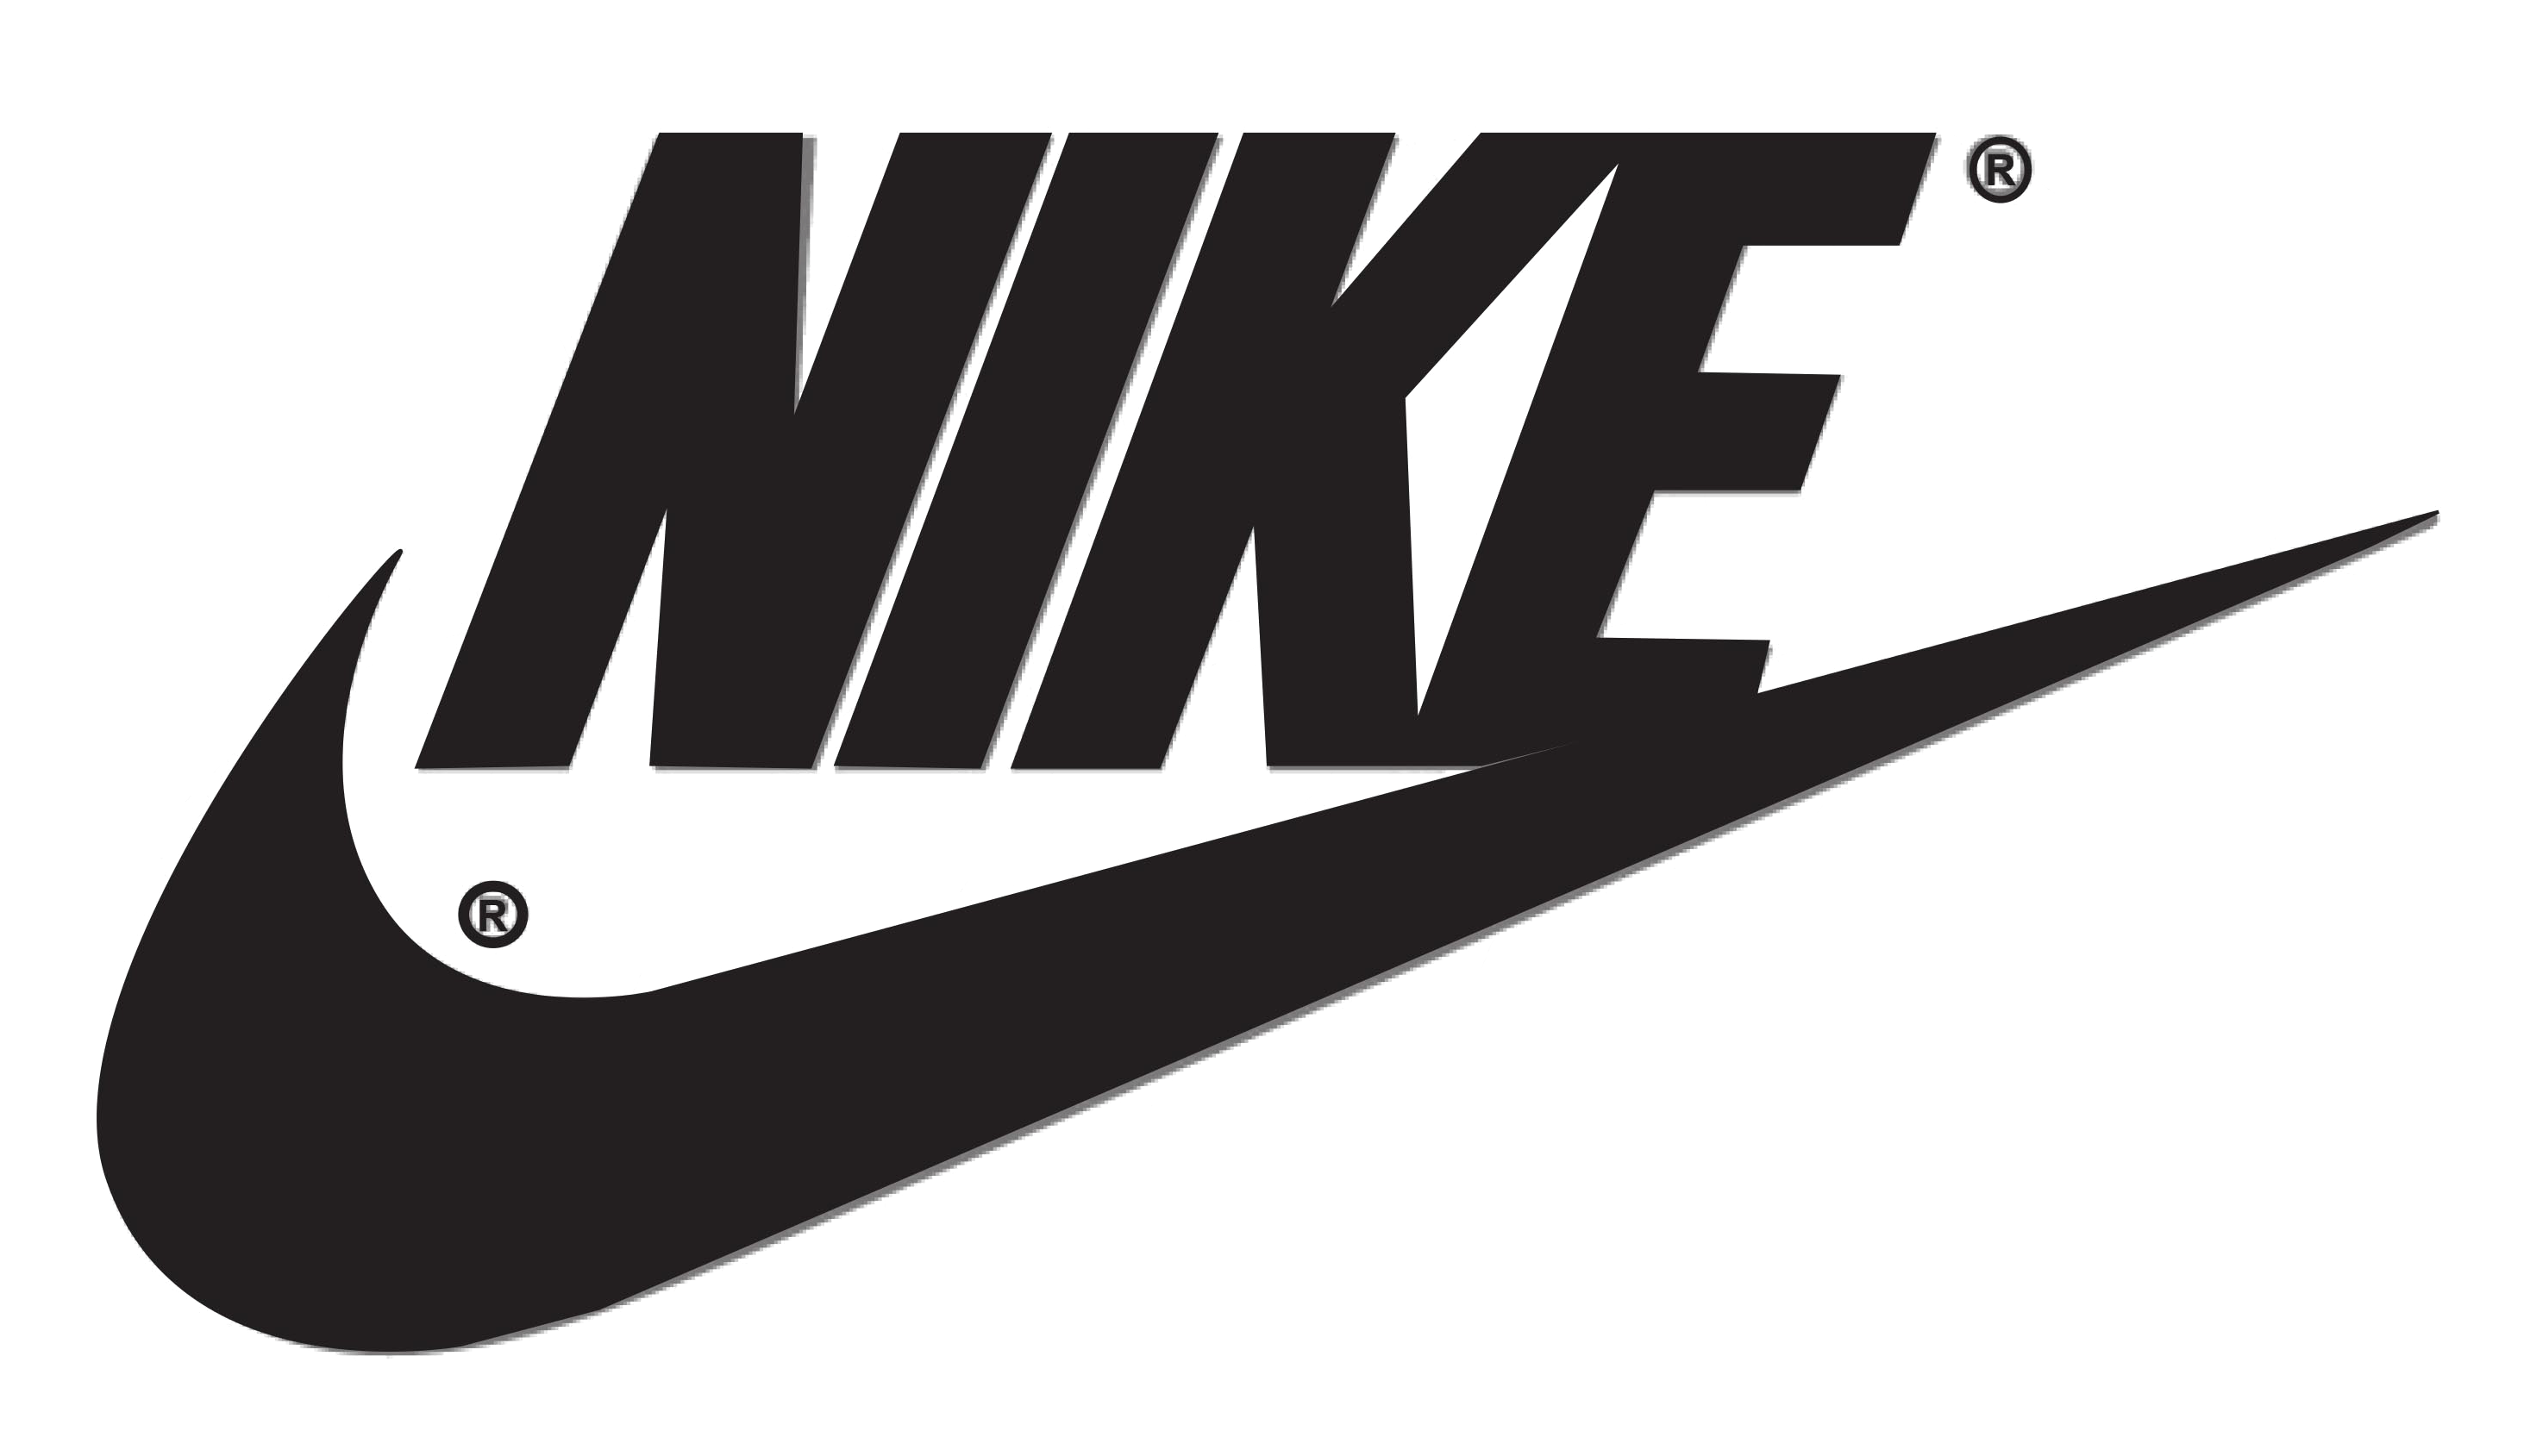 Nike_logo